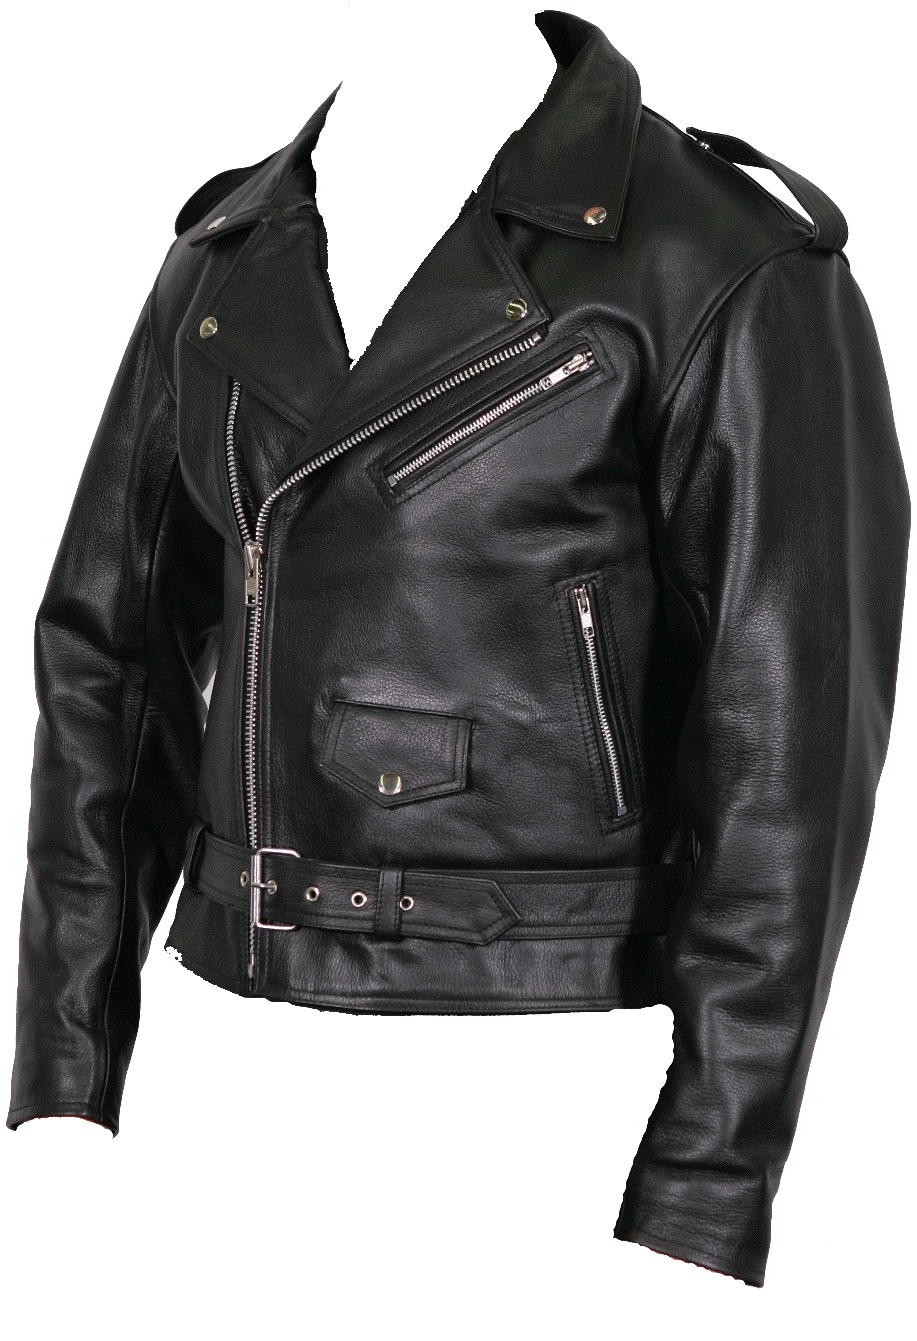 Black Leather Biker Jacket PNG image